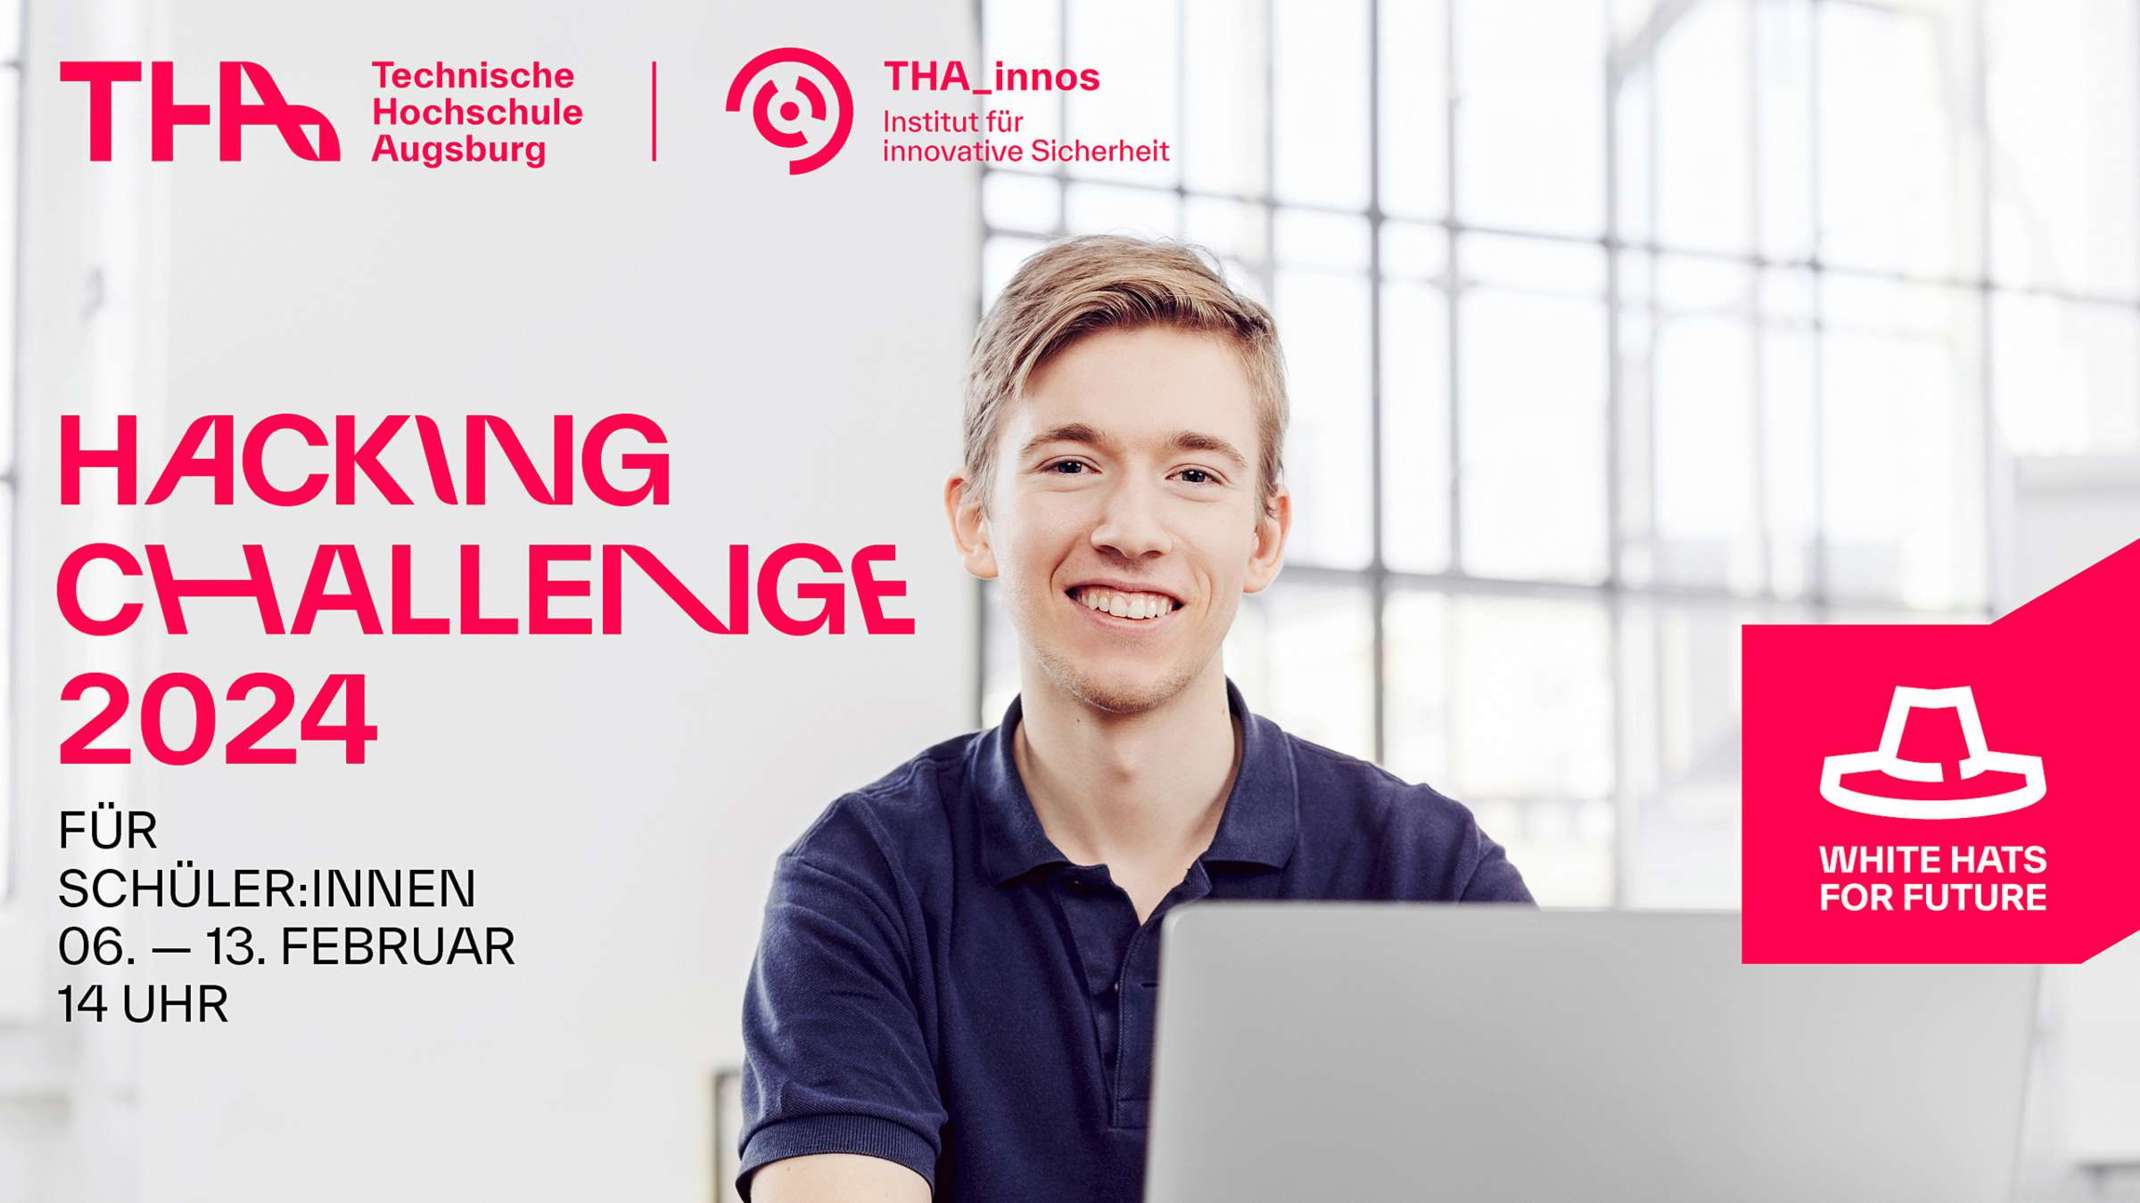 Hacking Challenge 2024 für Schüler:innen